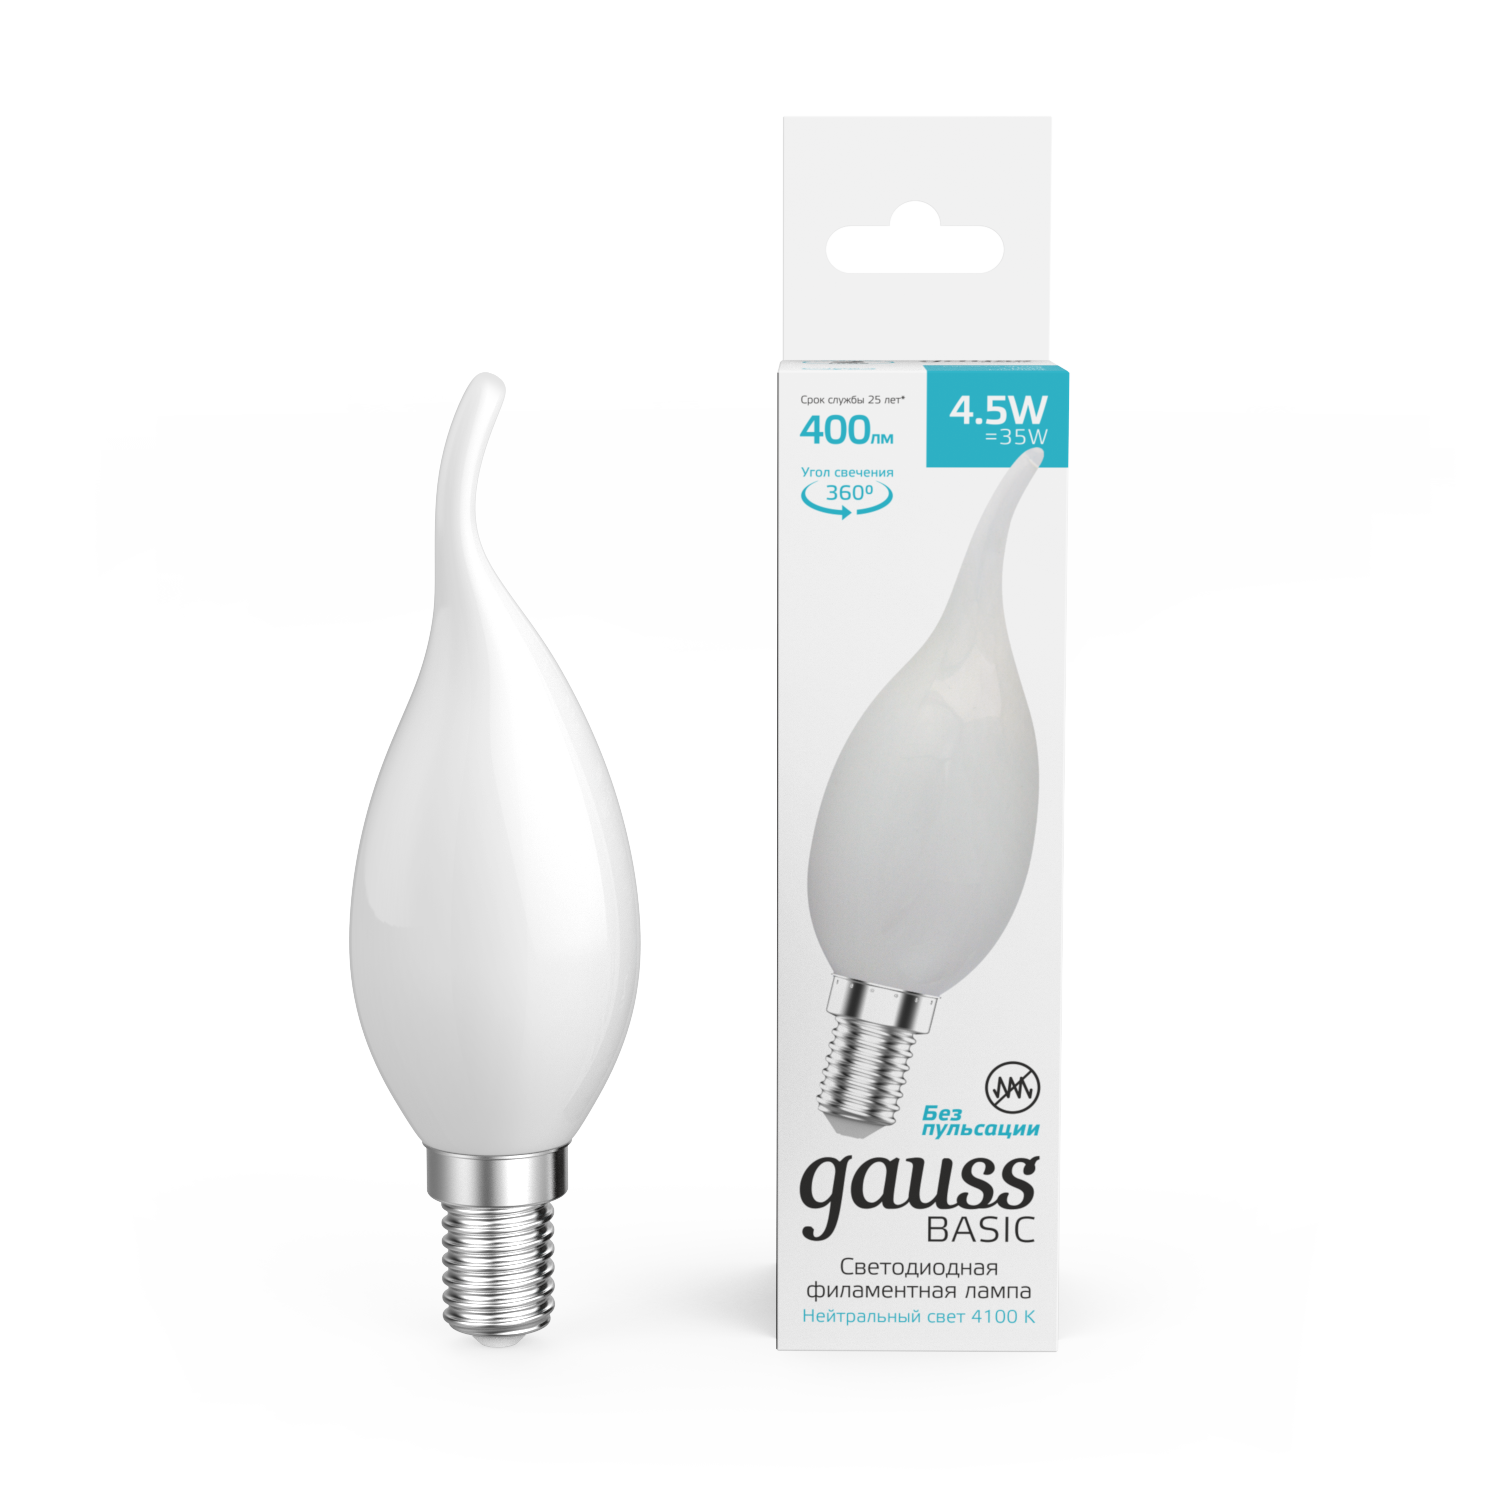 Лампа Gauss Basic Filament Свеча на ветру 4,5W 400lm 4100К Е14 milky  LED 1/10/50